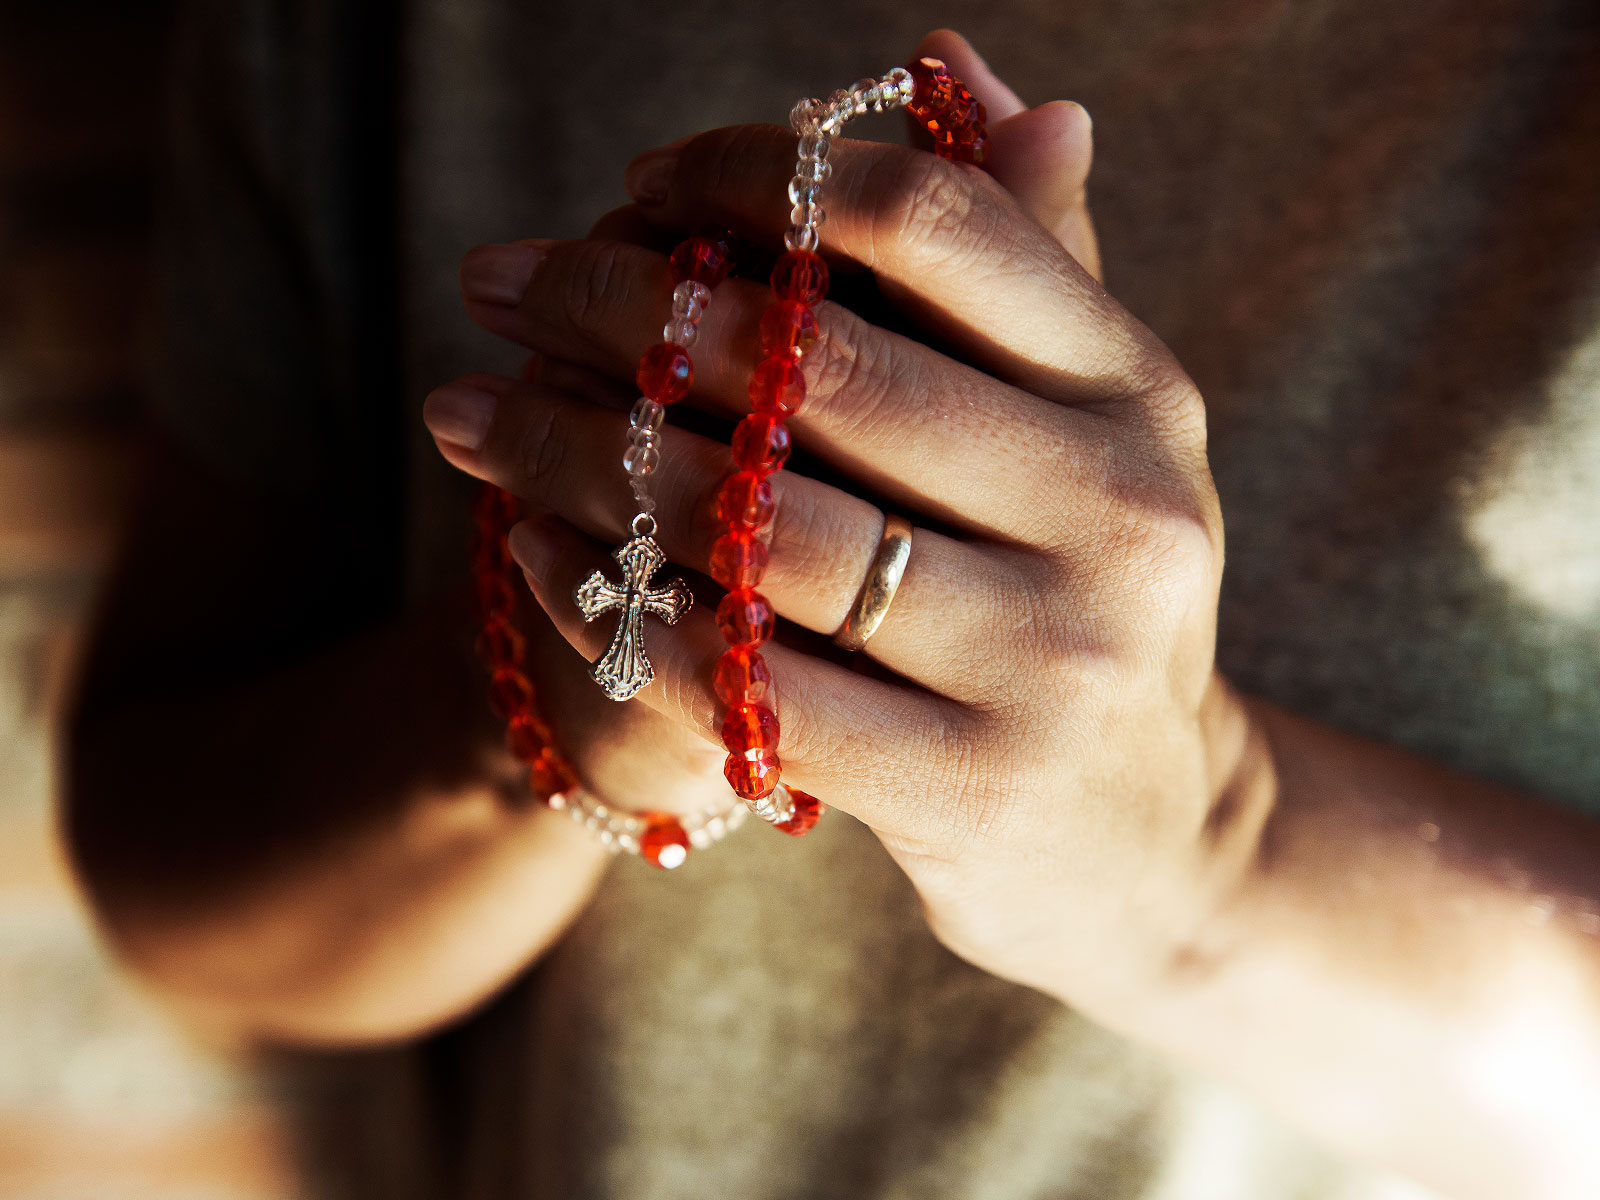 A penitência e a oração são fontes de conversão?